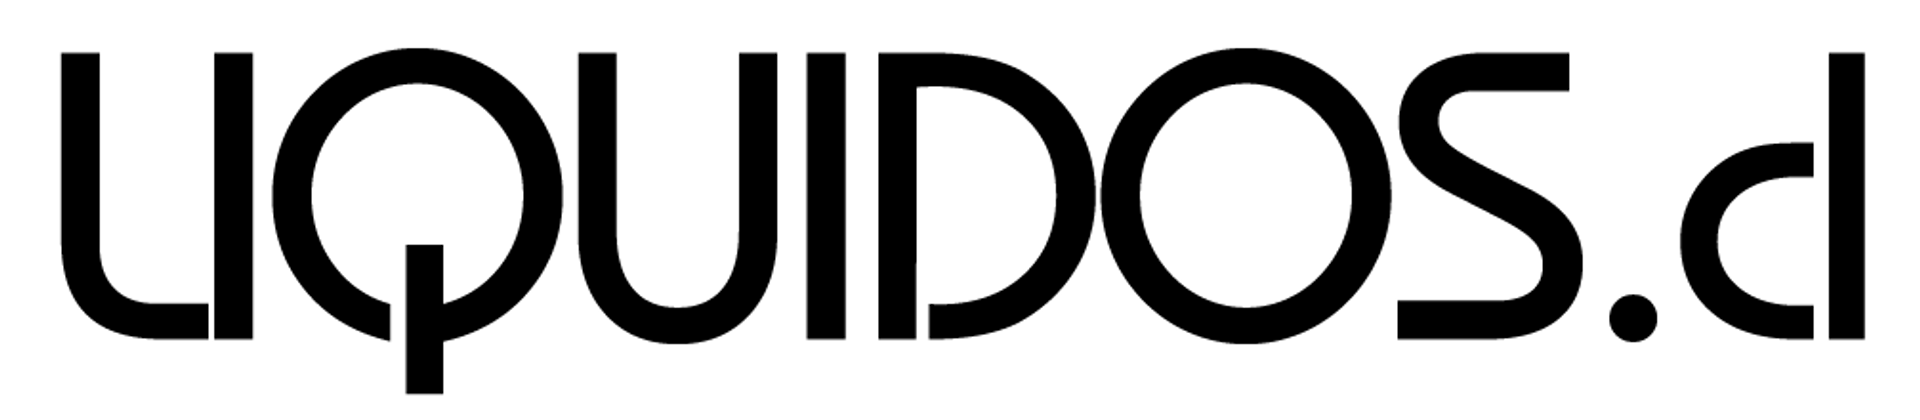 LÍQUIDOS logo de catálogo